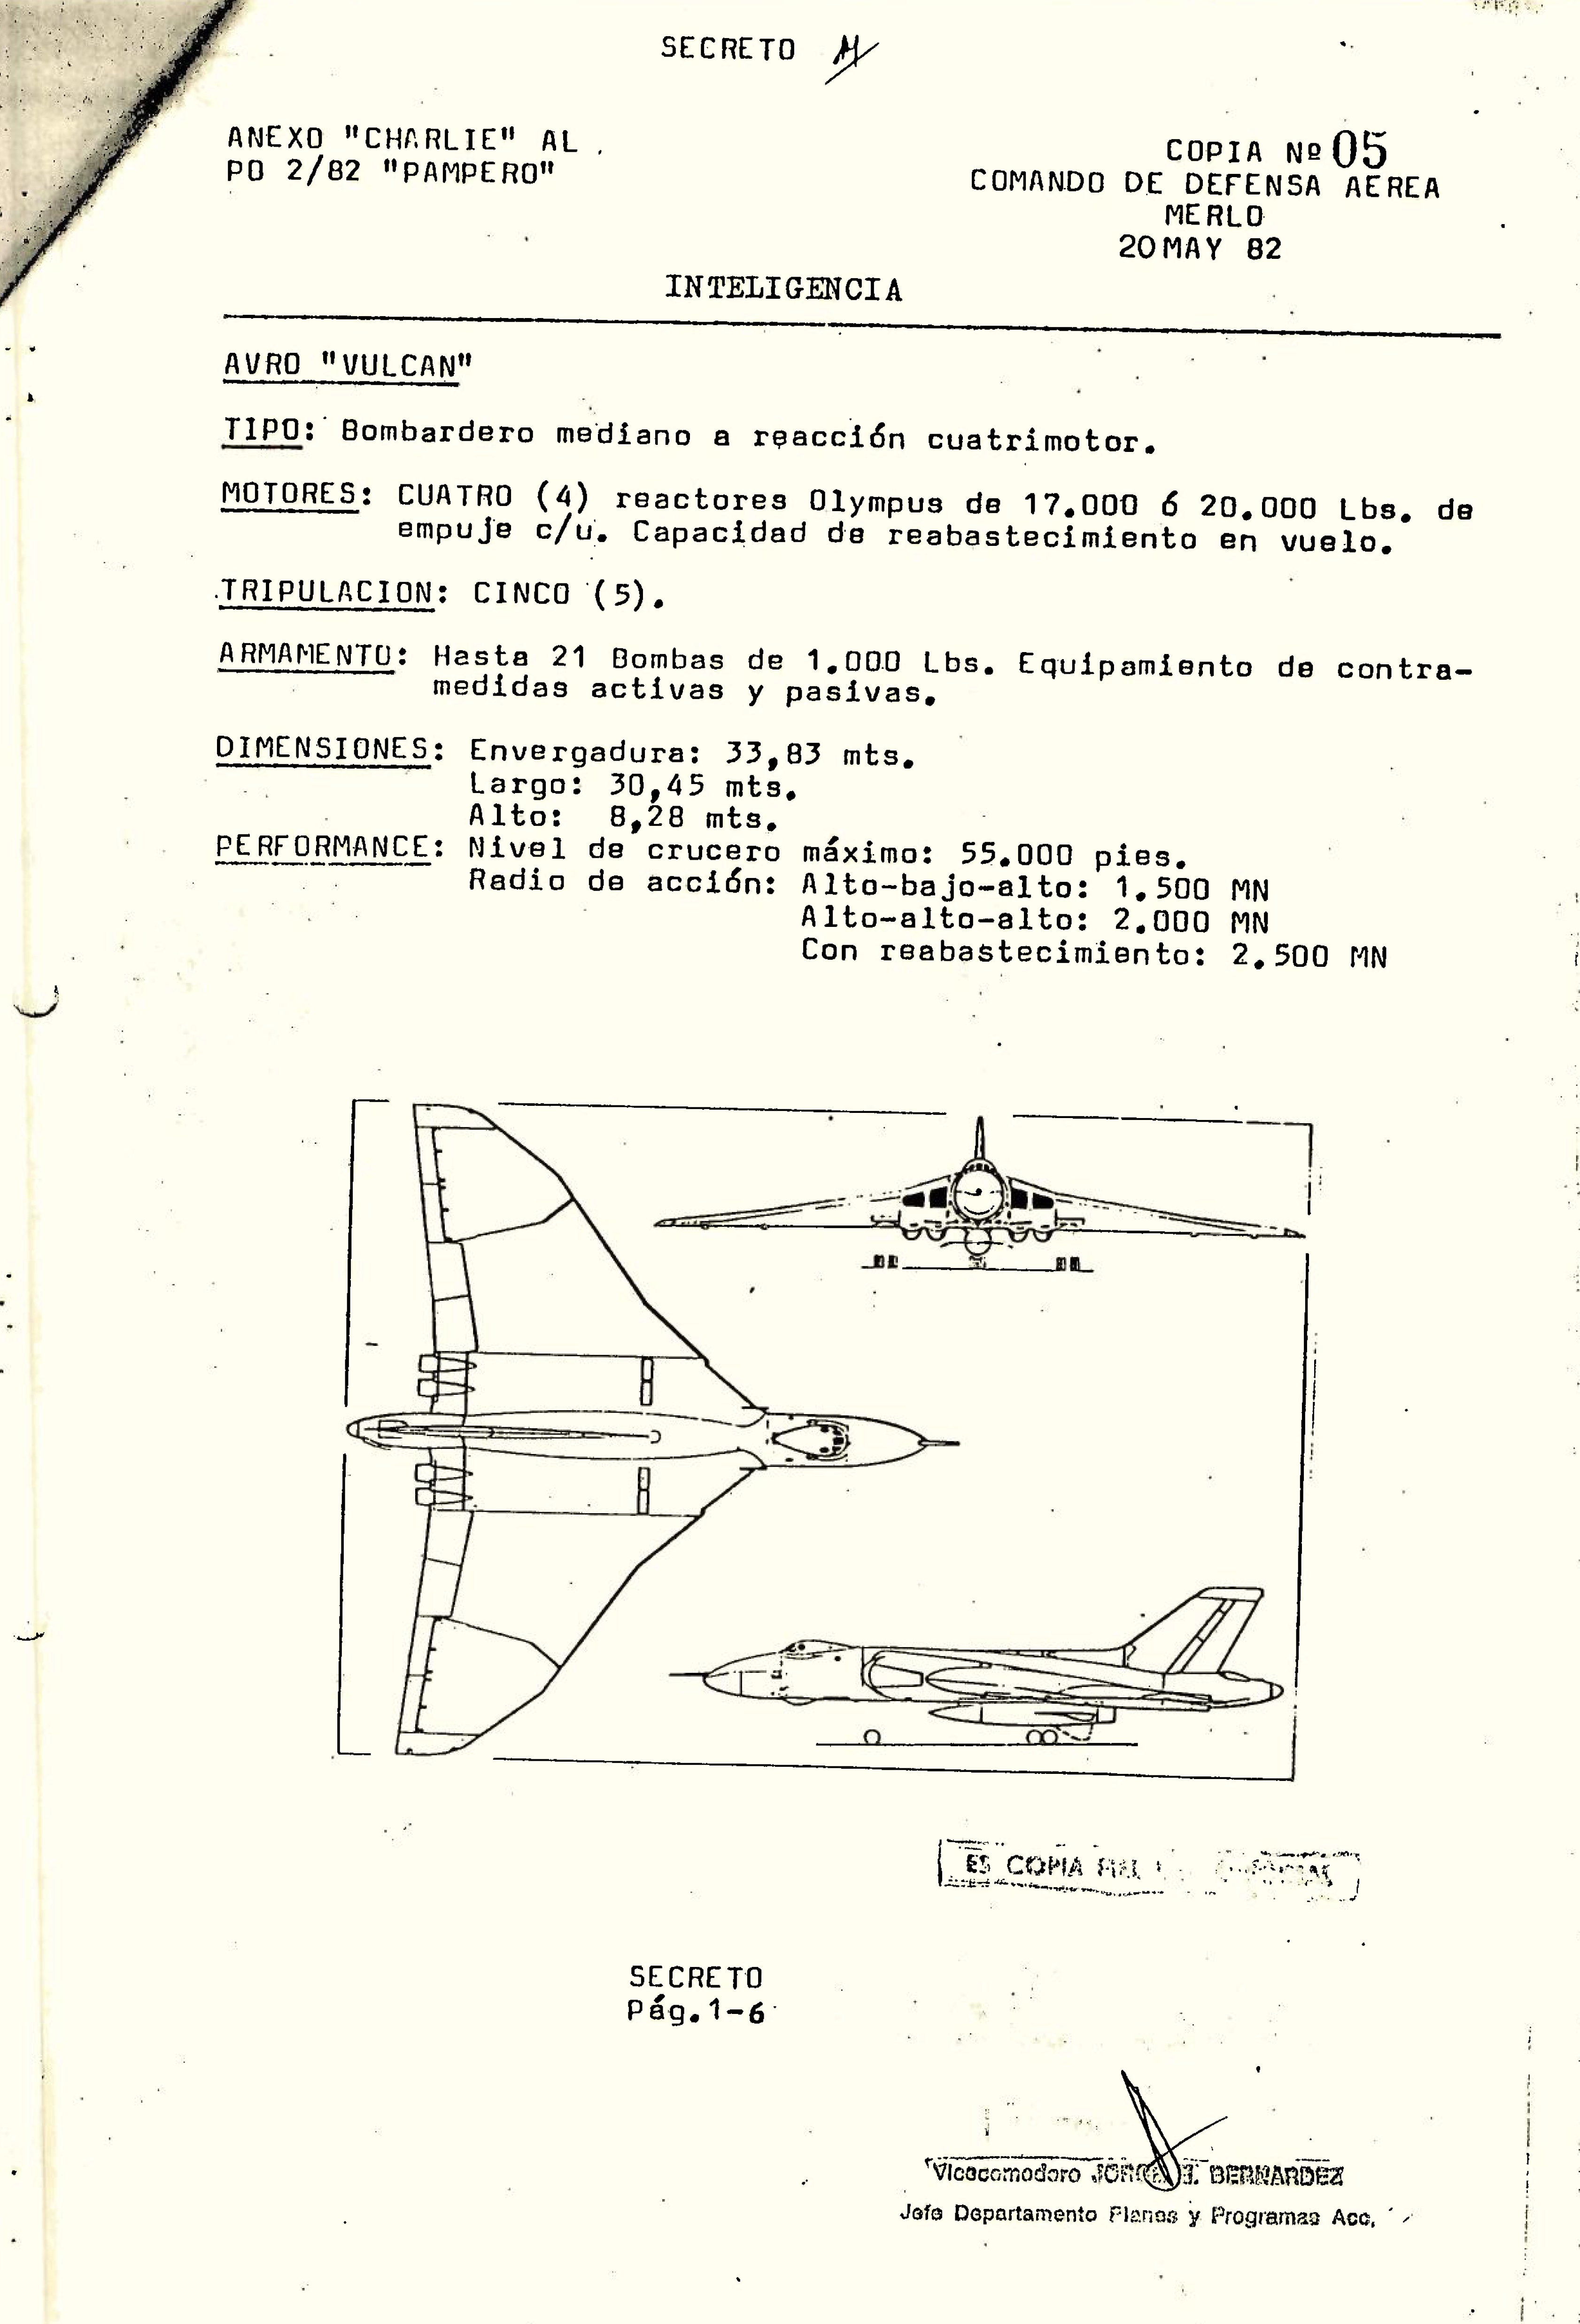 Ficha del bombardero Avro Vulcan, según el anexo de Inteligencia de la Operación Pampero